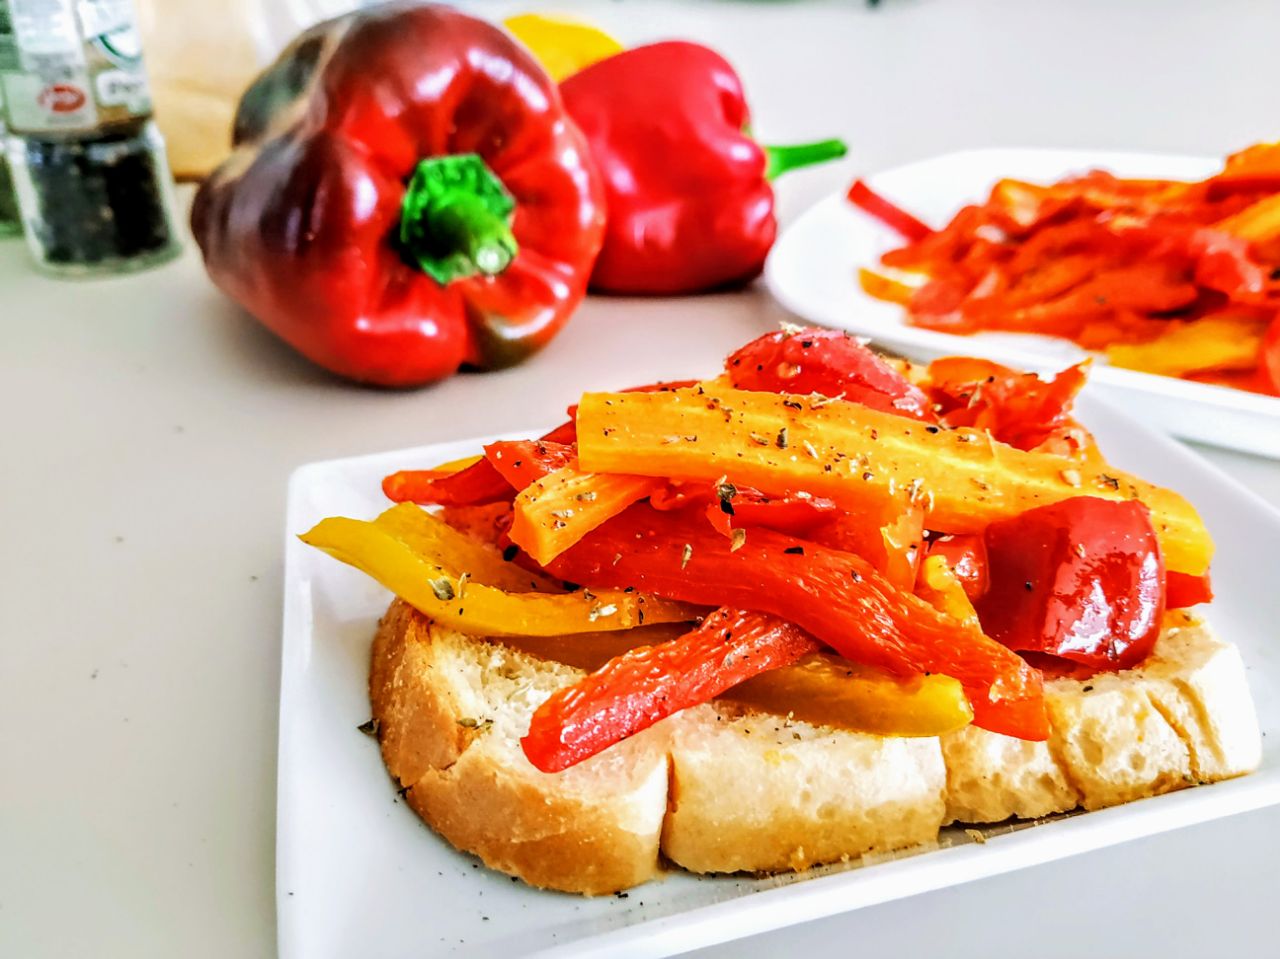 Contorni senza burro e senza formaggio: peperoni carote e pomodori in padella con olio evo e origano!